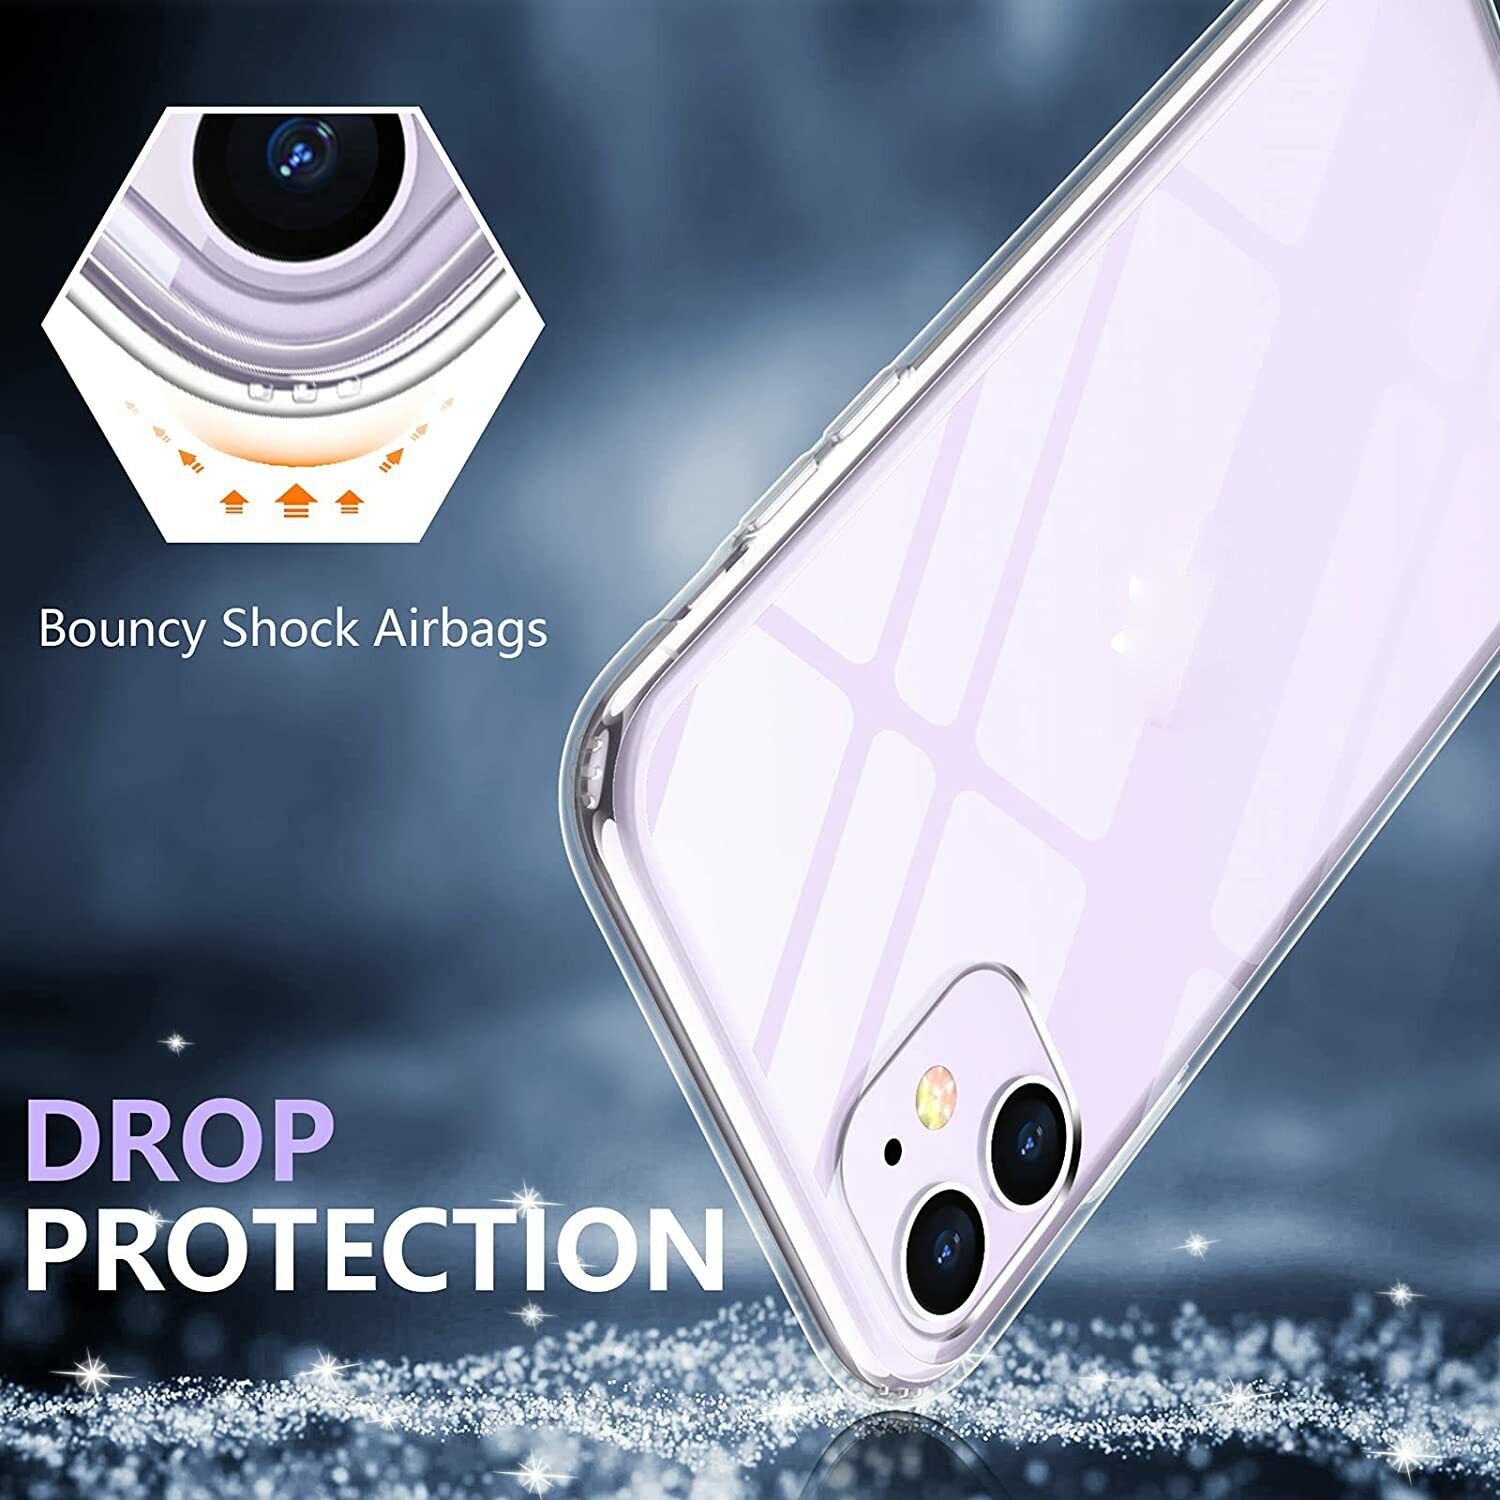 Hình ảnh Ốp lưng chống sốc trong suốt cho iPhone 11 Pro Max (6.5 inch) hiệu Memumi Glitter siêu mỏng 1.5mm độ trong tuyệt đối, chống trầy xước, chống ố vàng, tản nhiệt tốt - hàng nhập khẩu